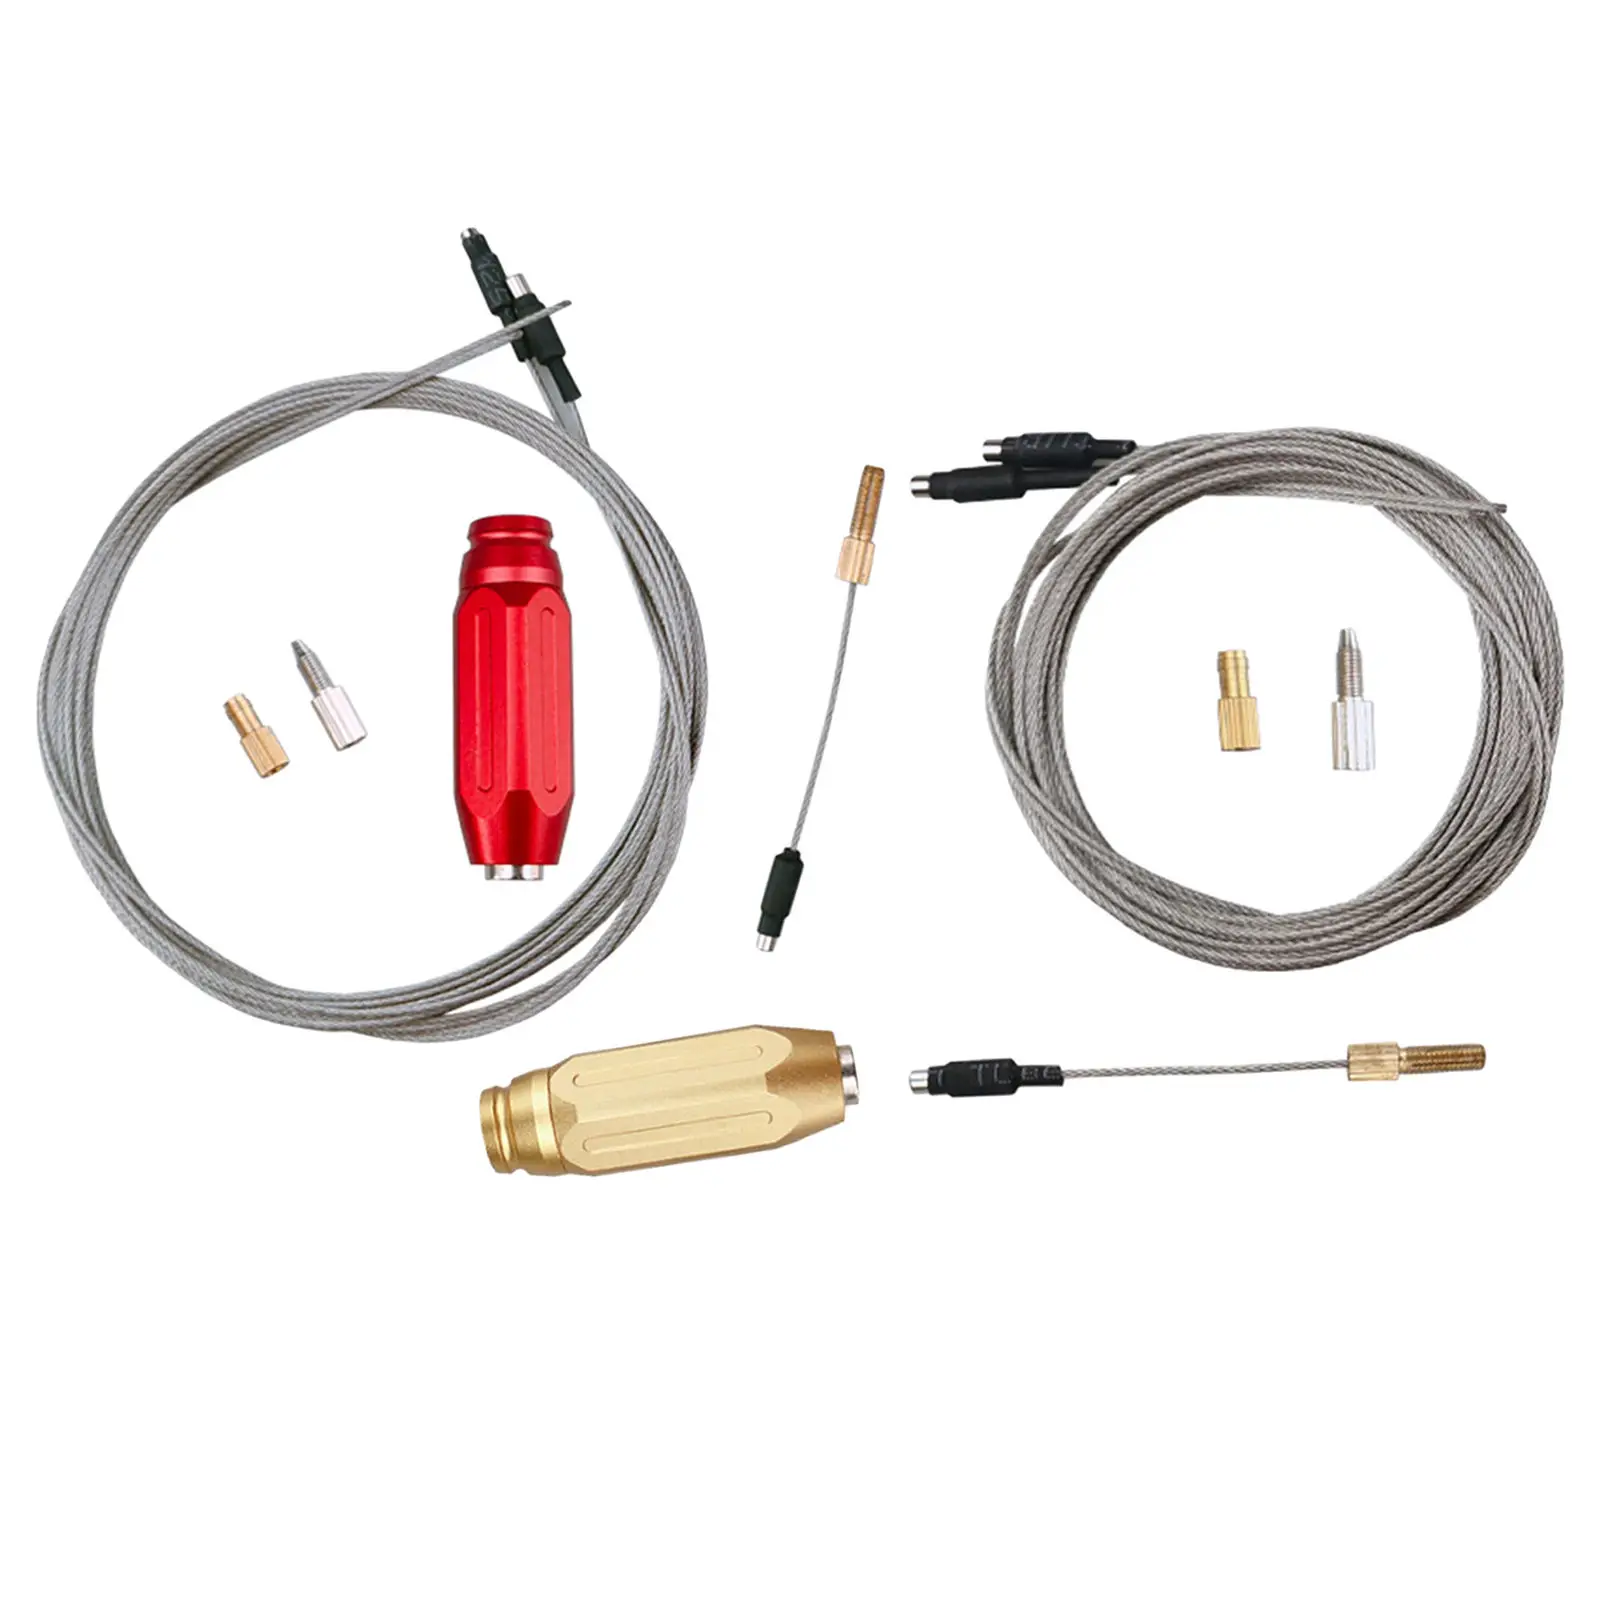 

Инструмент для прокатки внутреннего кабеля велосипеда, гидравлический проводной кабель рамы велосипеда, внутренний кабель er